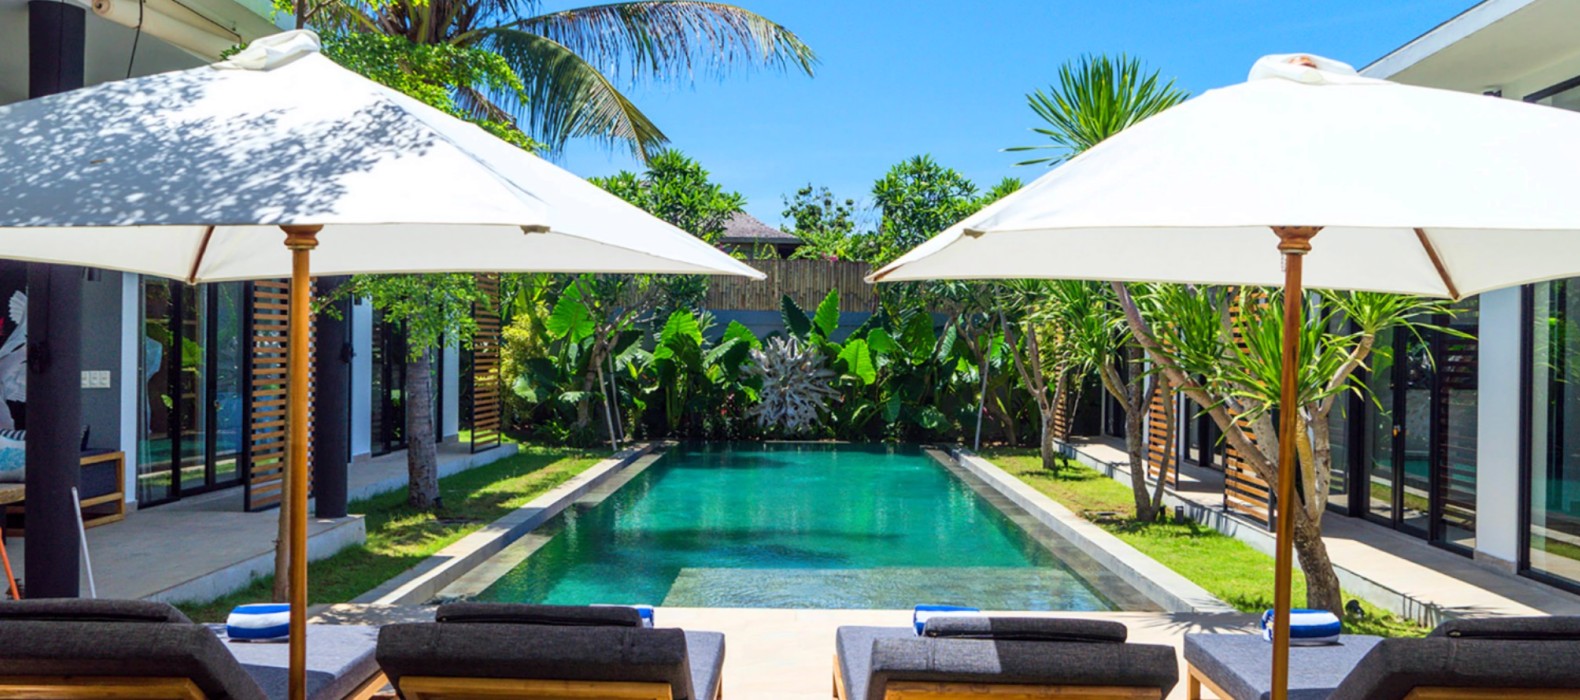 Exterior pool area view of Villa Vida in Bali